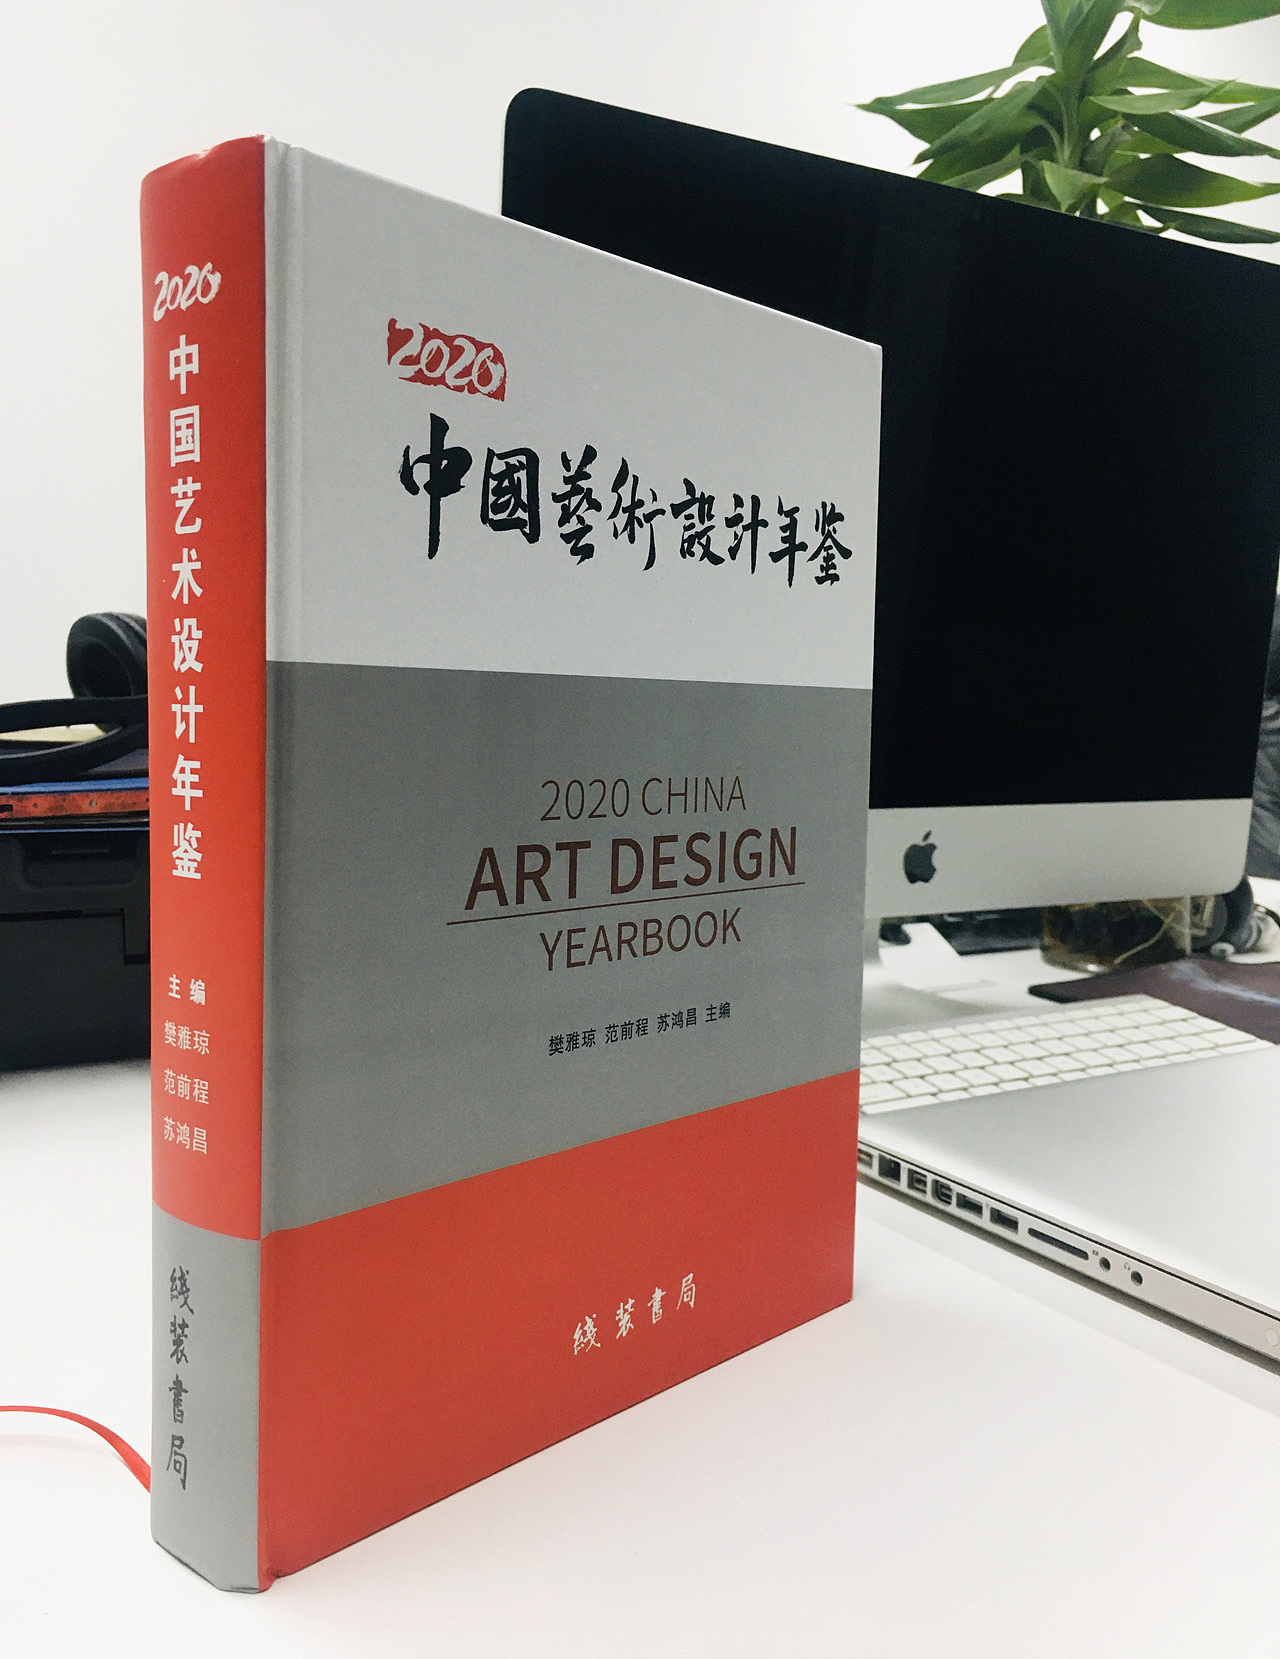 为《中国艺术设计年鉴》设计封面并题字